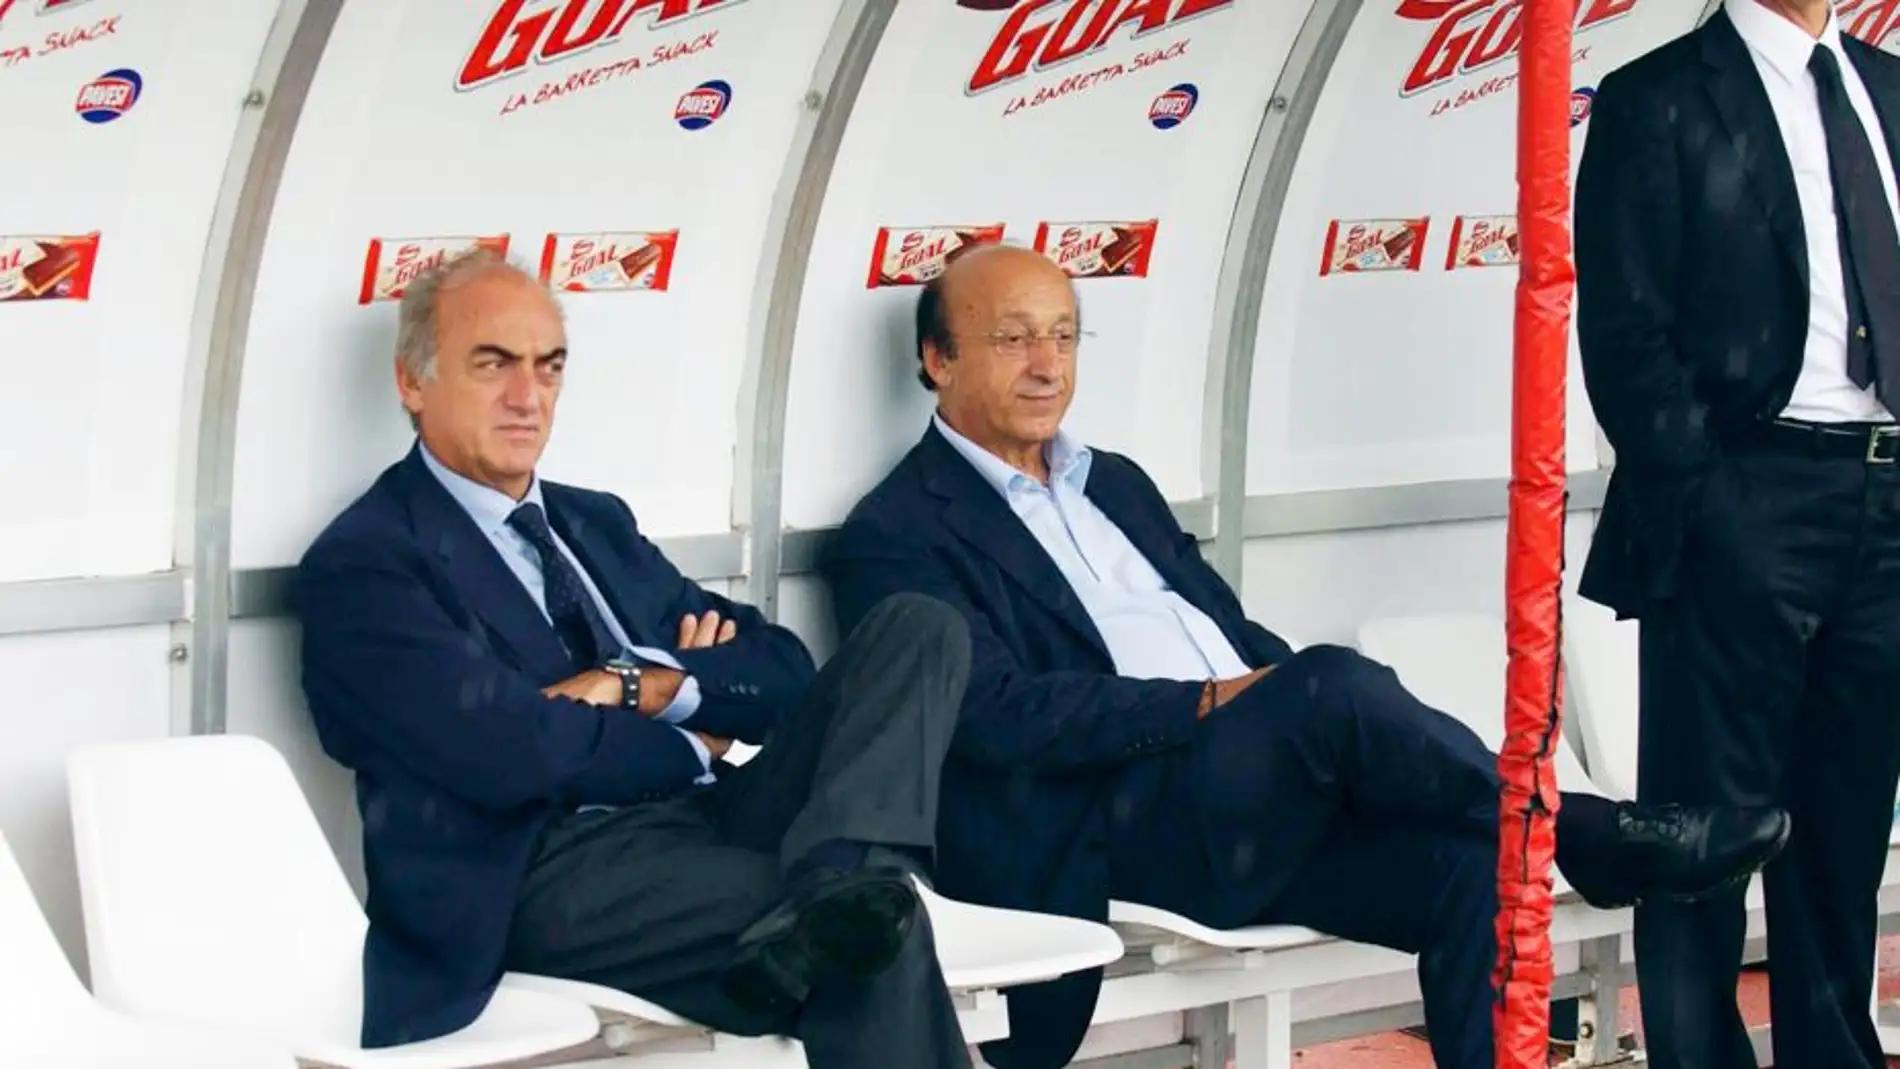 Antonio Giraudo (izq) y Luciano Moggi (dch), dirigentes de la Juventus implicados en el Calciopoli